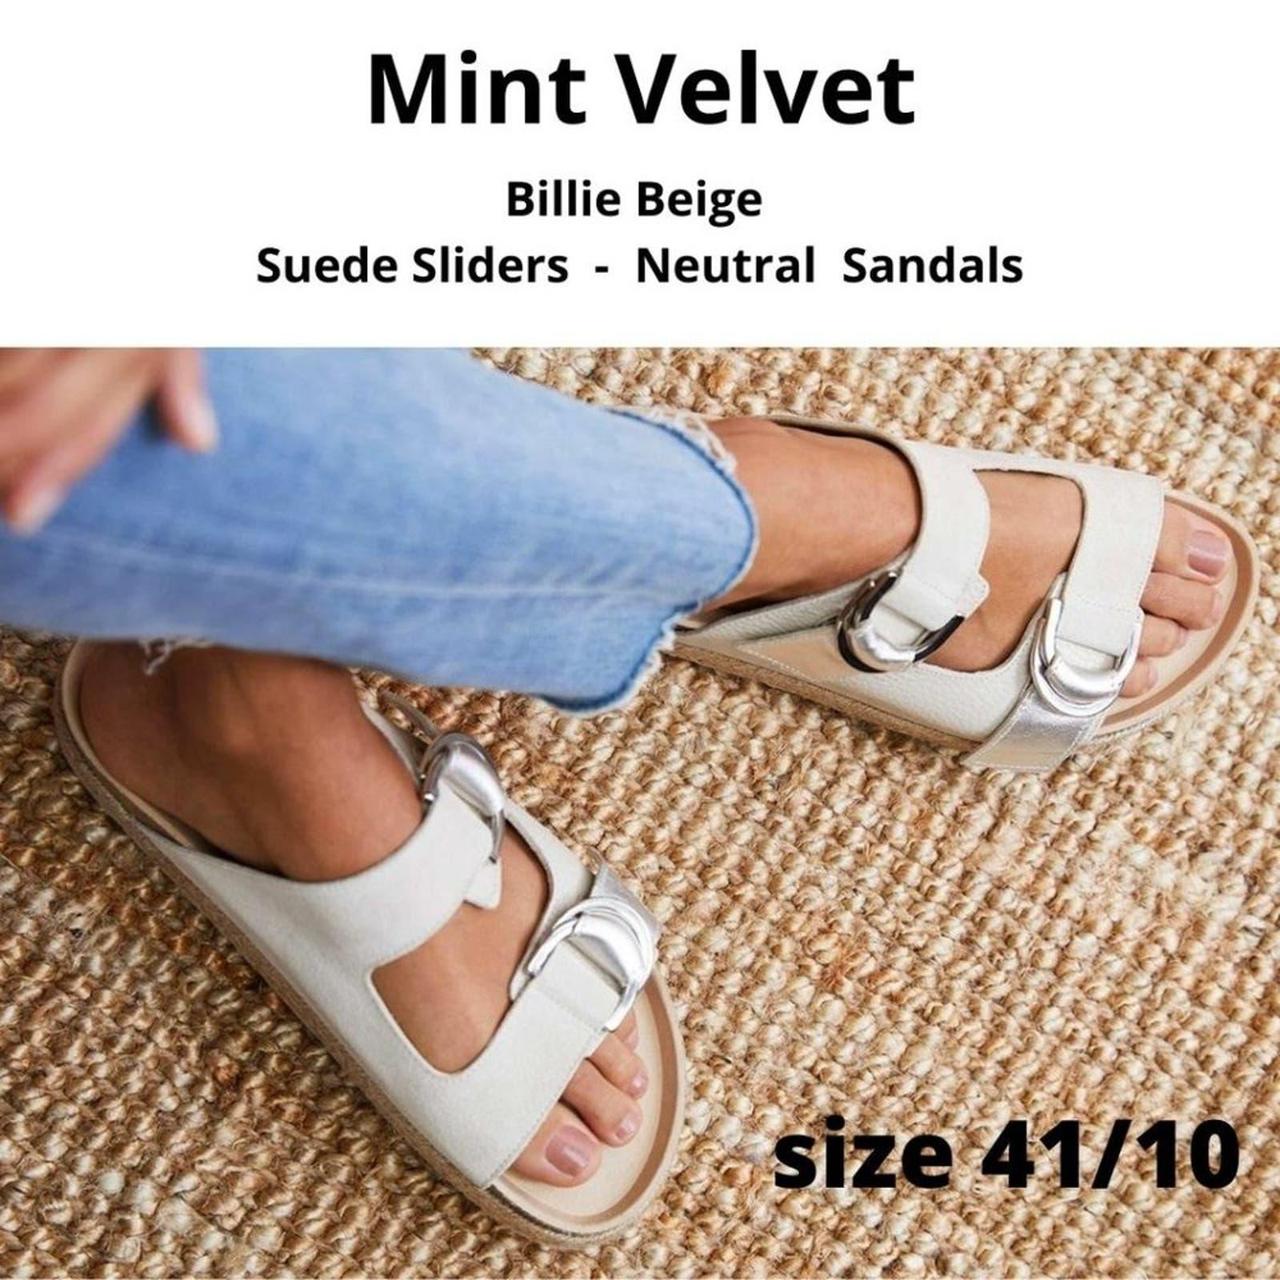 Women's Mint Velvet Shoes, New & Used